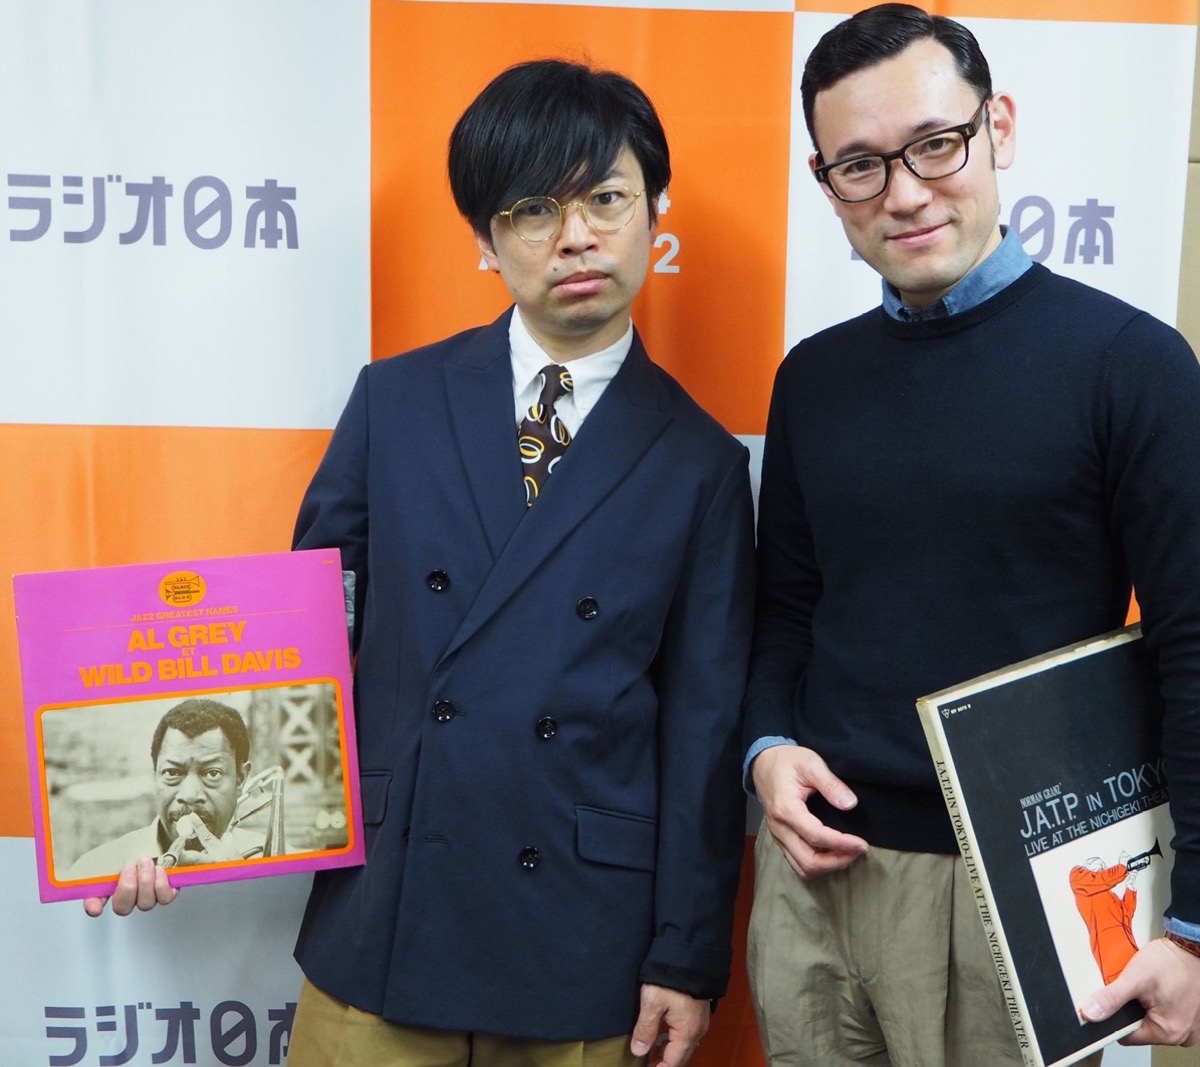 ラジオ日本｢オトナのJAZZ TIME｣に｢在日ファンク｣の浜野謙太さんゲスト出演